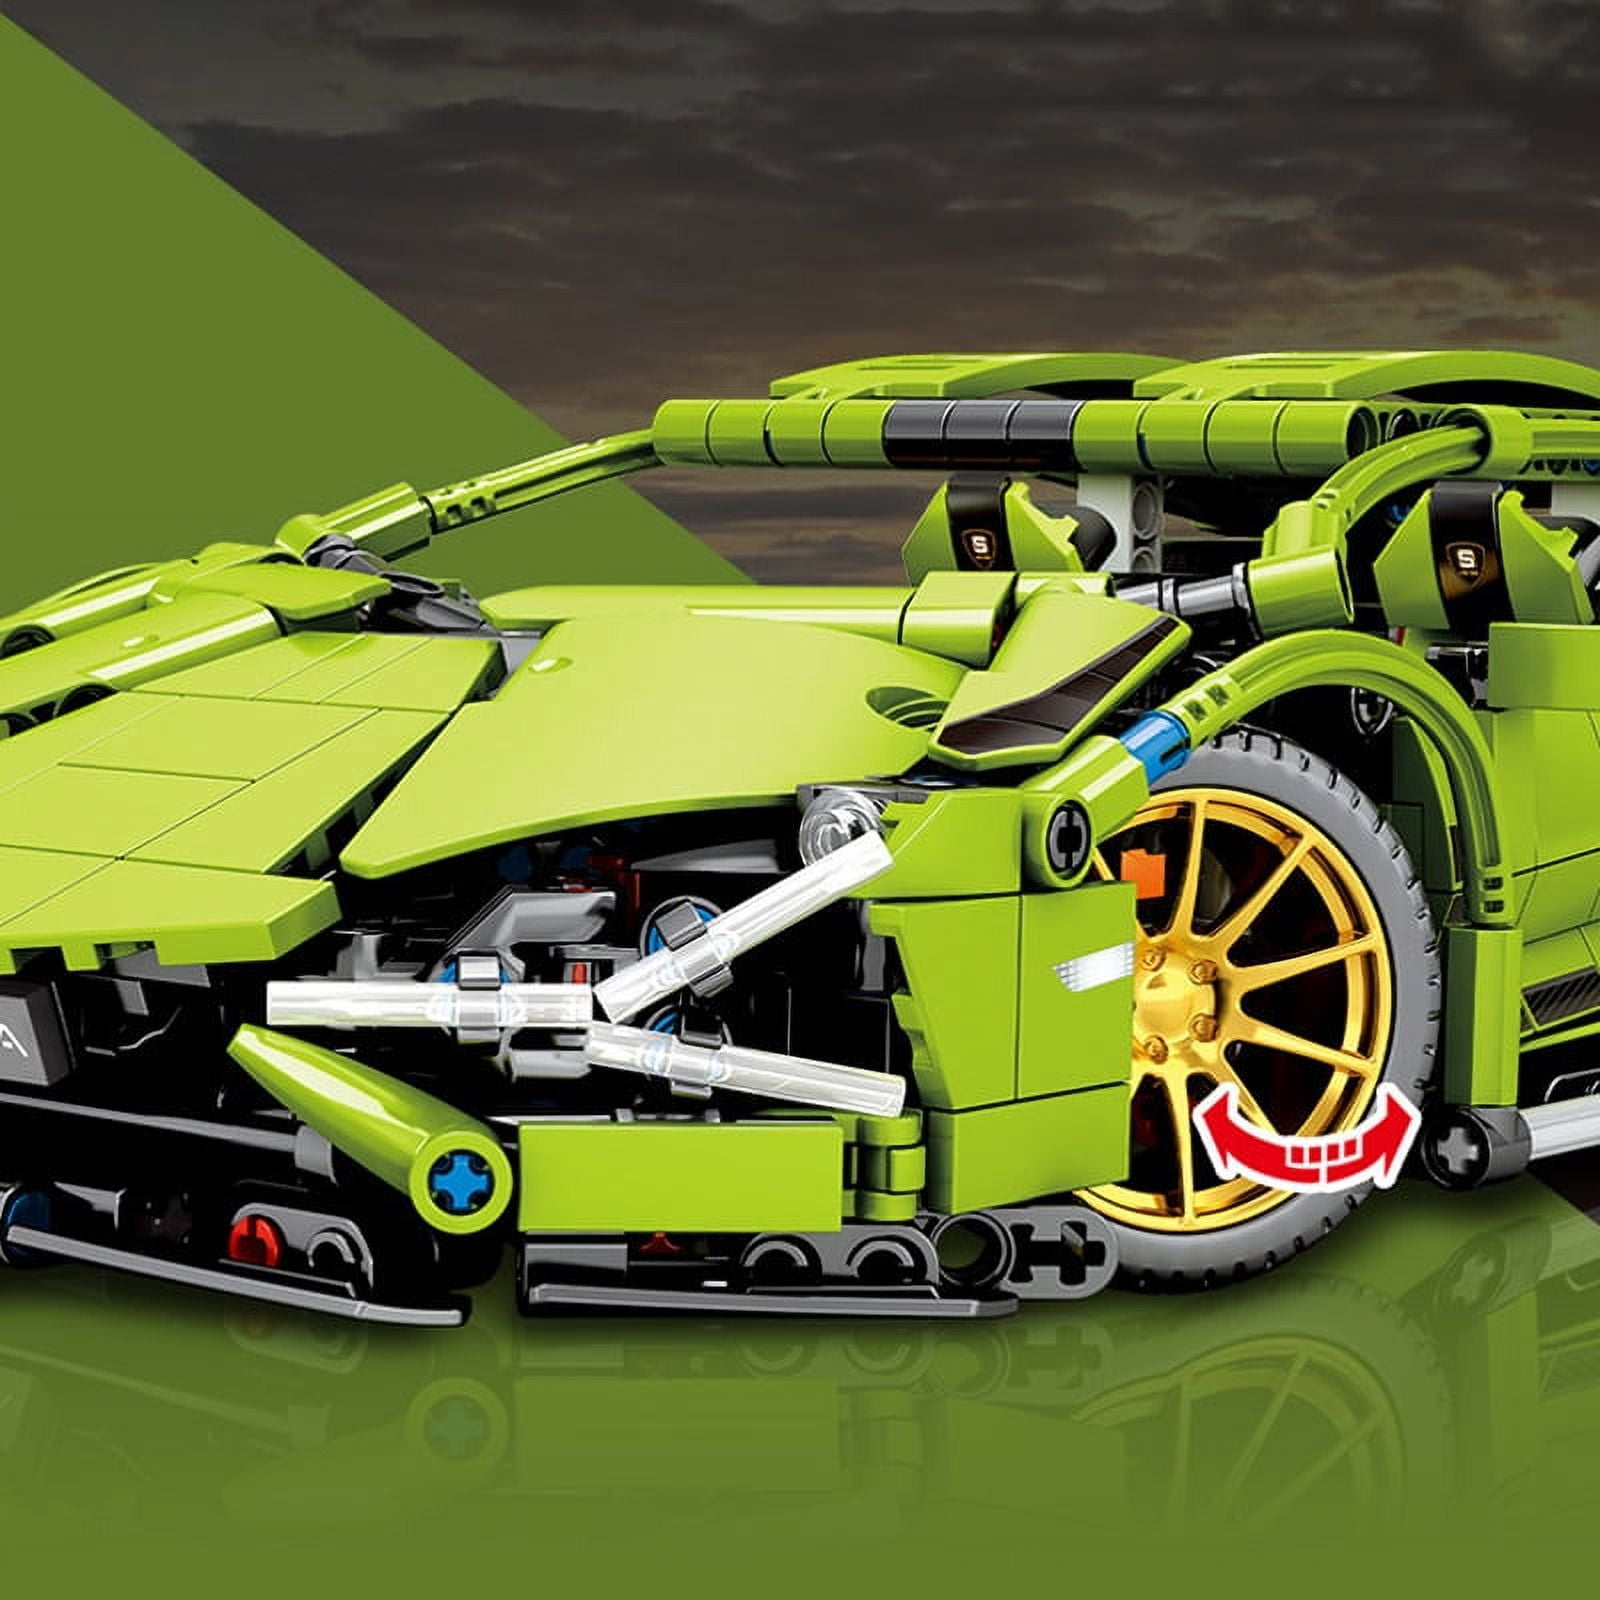 LEGO Technic Voiture Super Speed Lamborghini - 1298 Pièces - Brick Tech -  Blocs compatibles avec Lego Technic